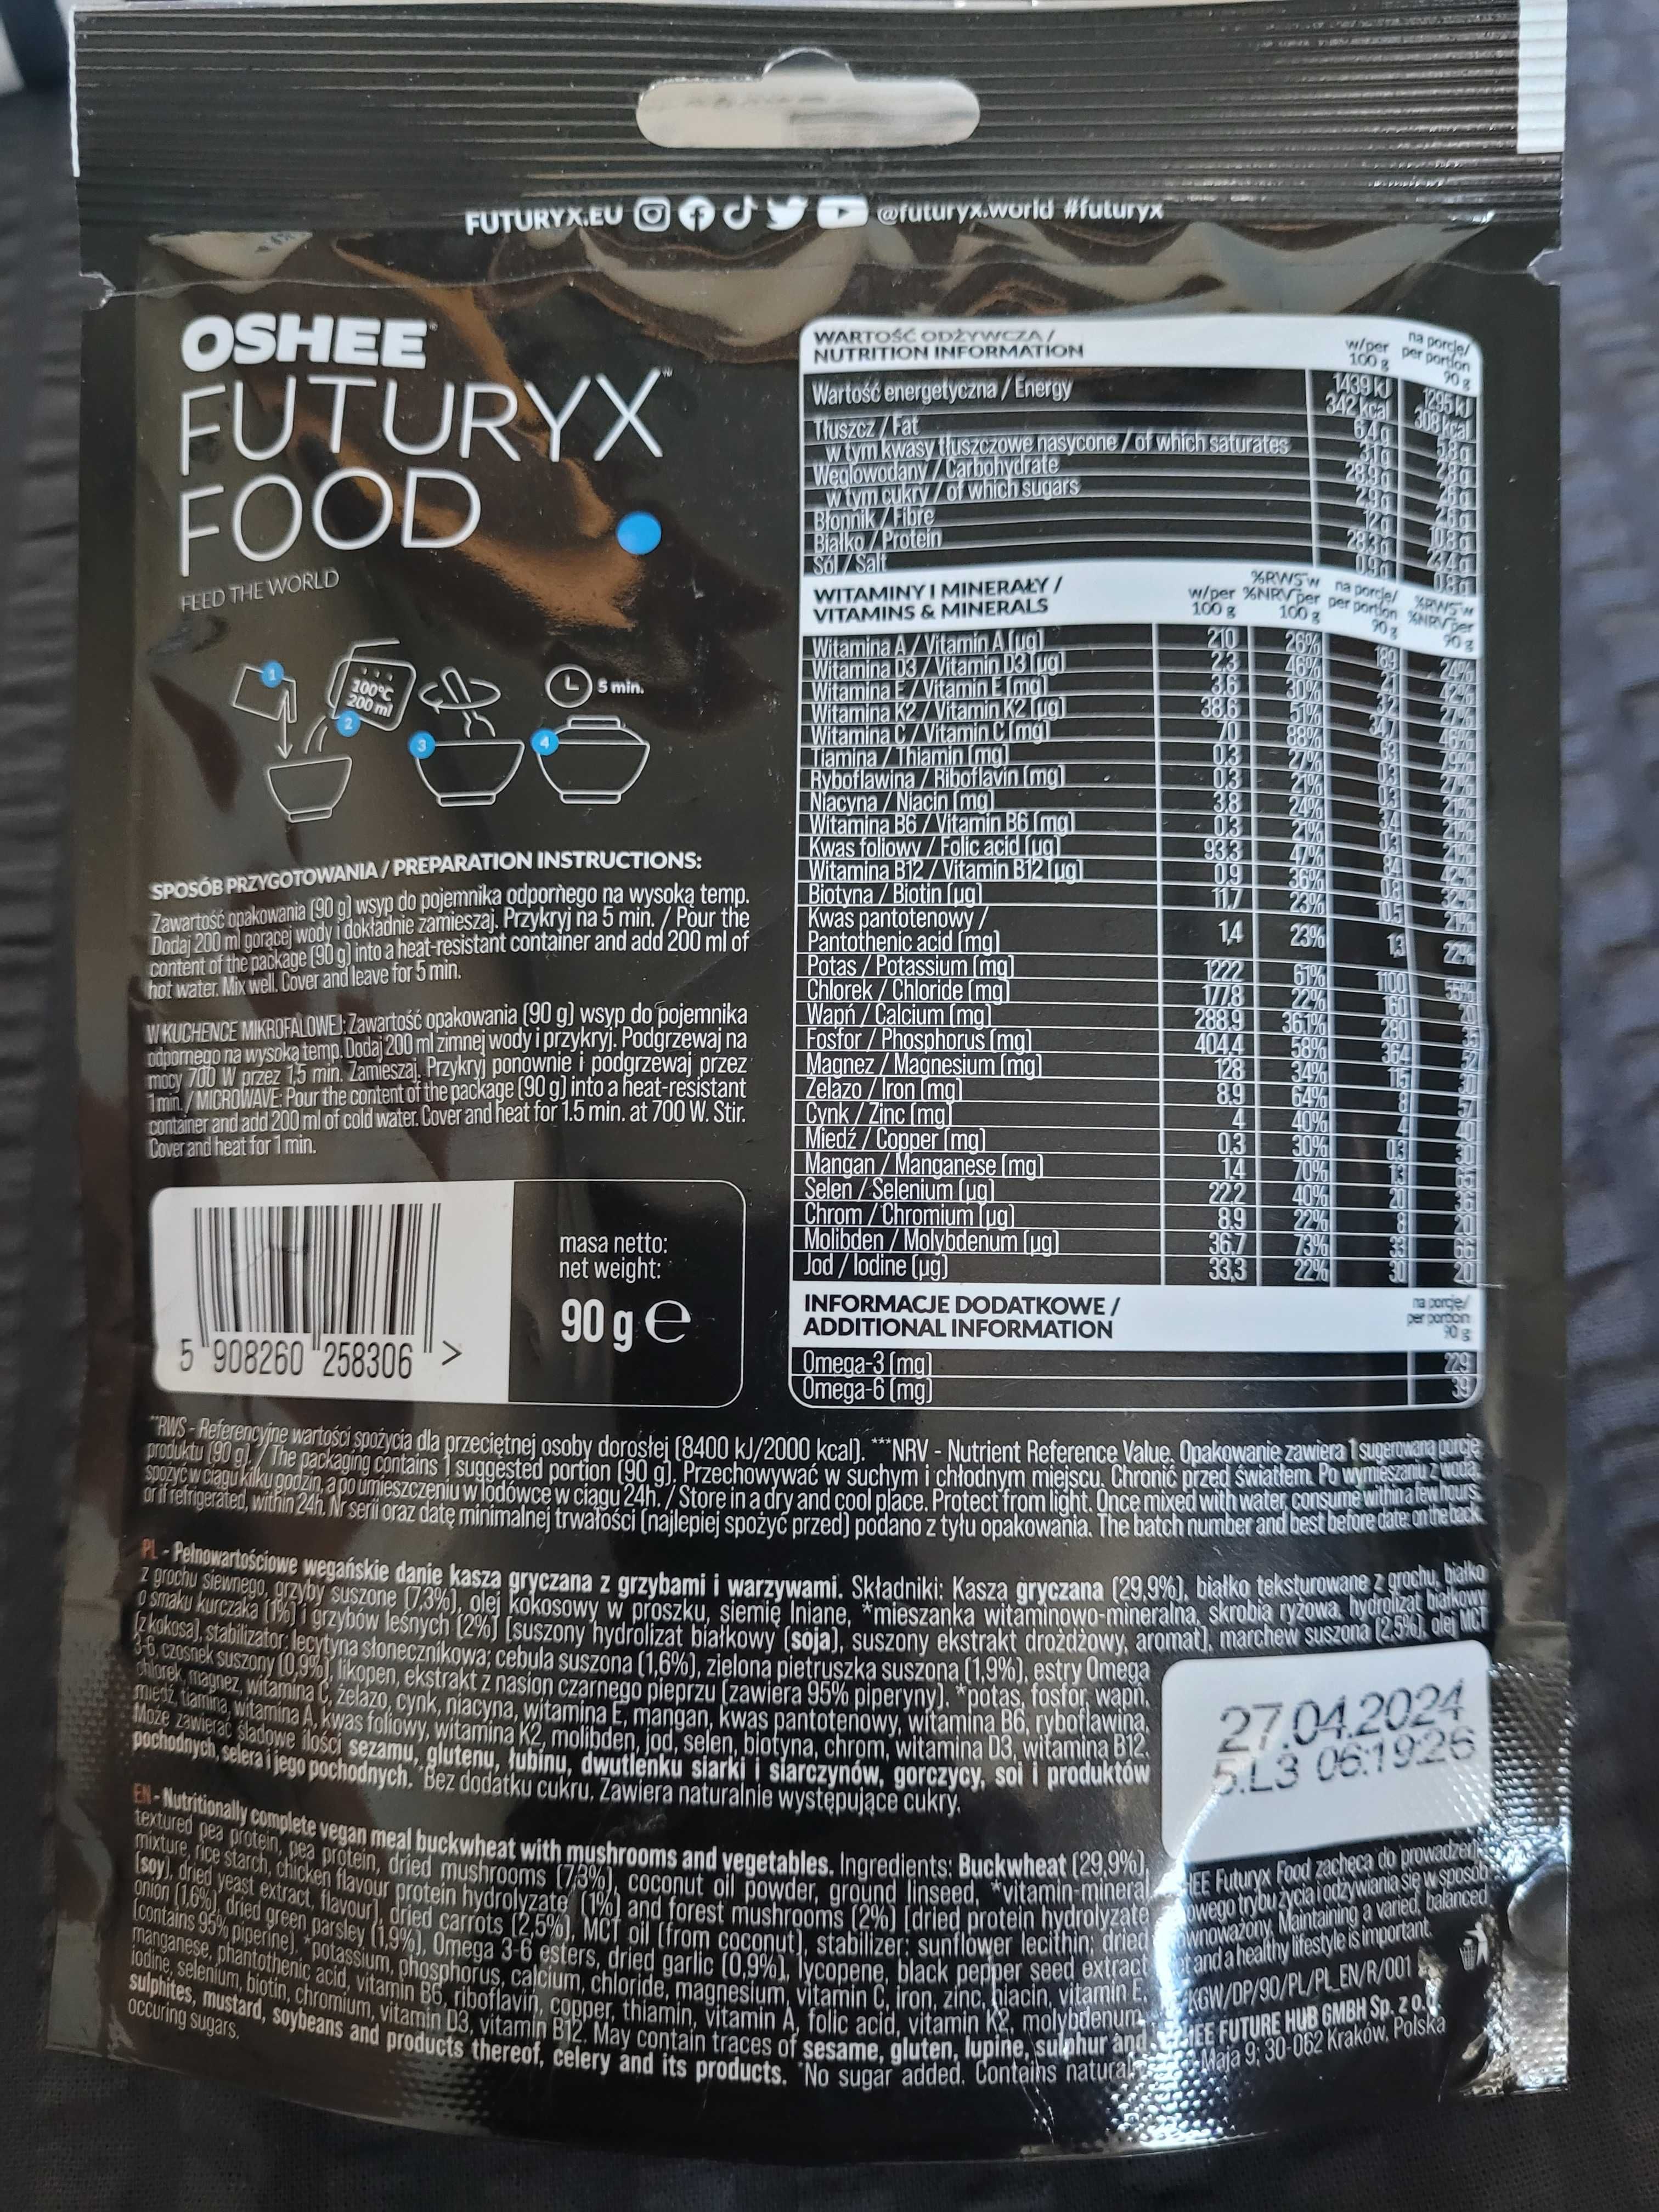 Oshee futuryx food 3 różne porcje po 90 g.